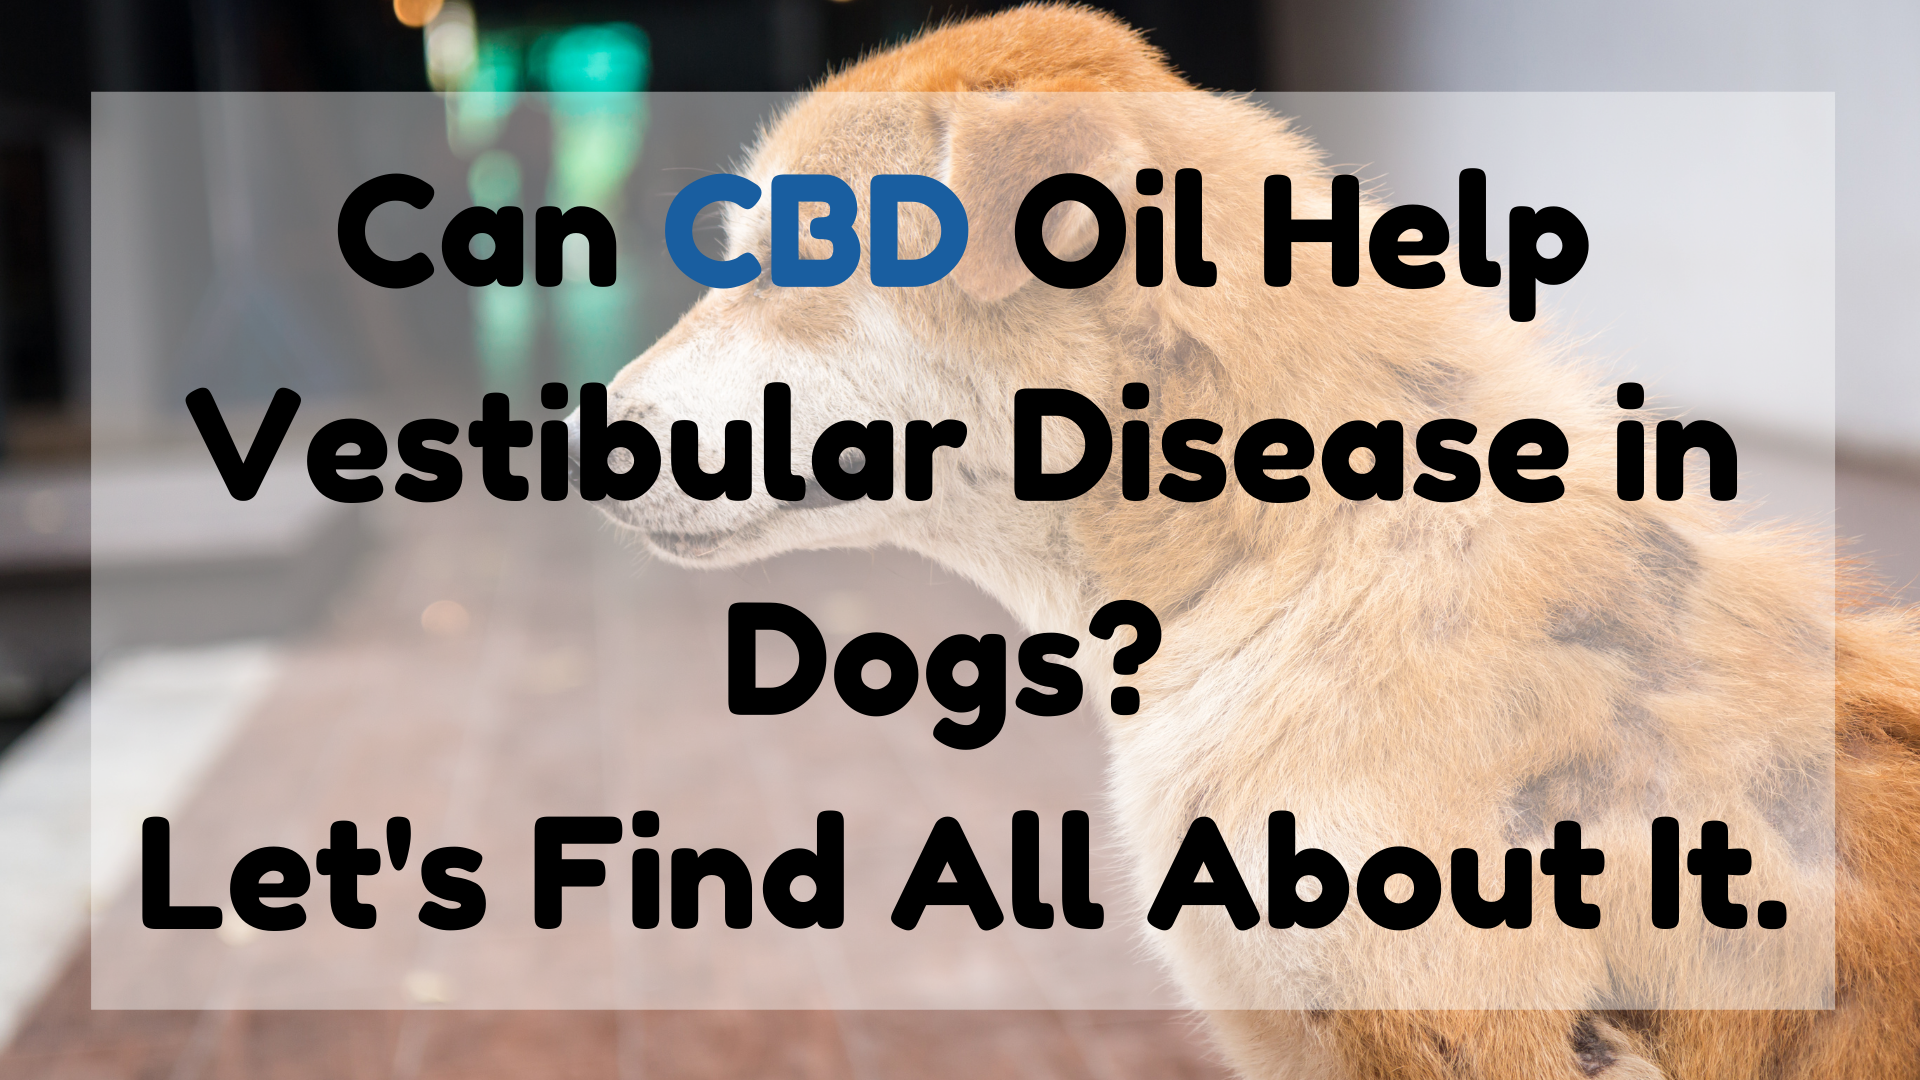 Can CBD Oil Help Vestibular Disease in Dogs